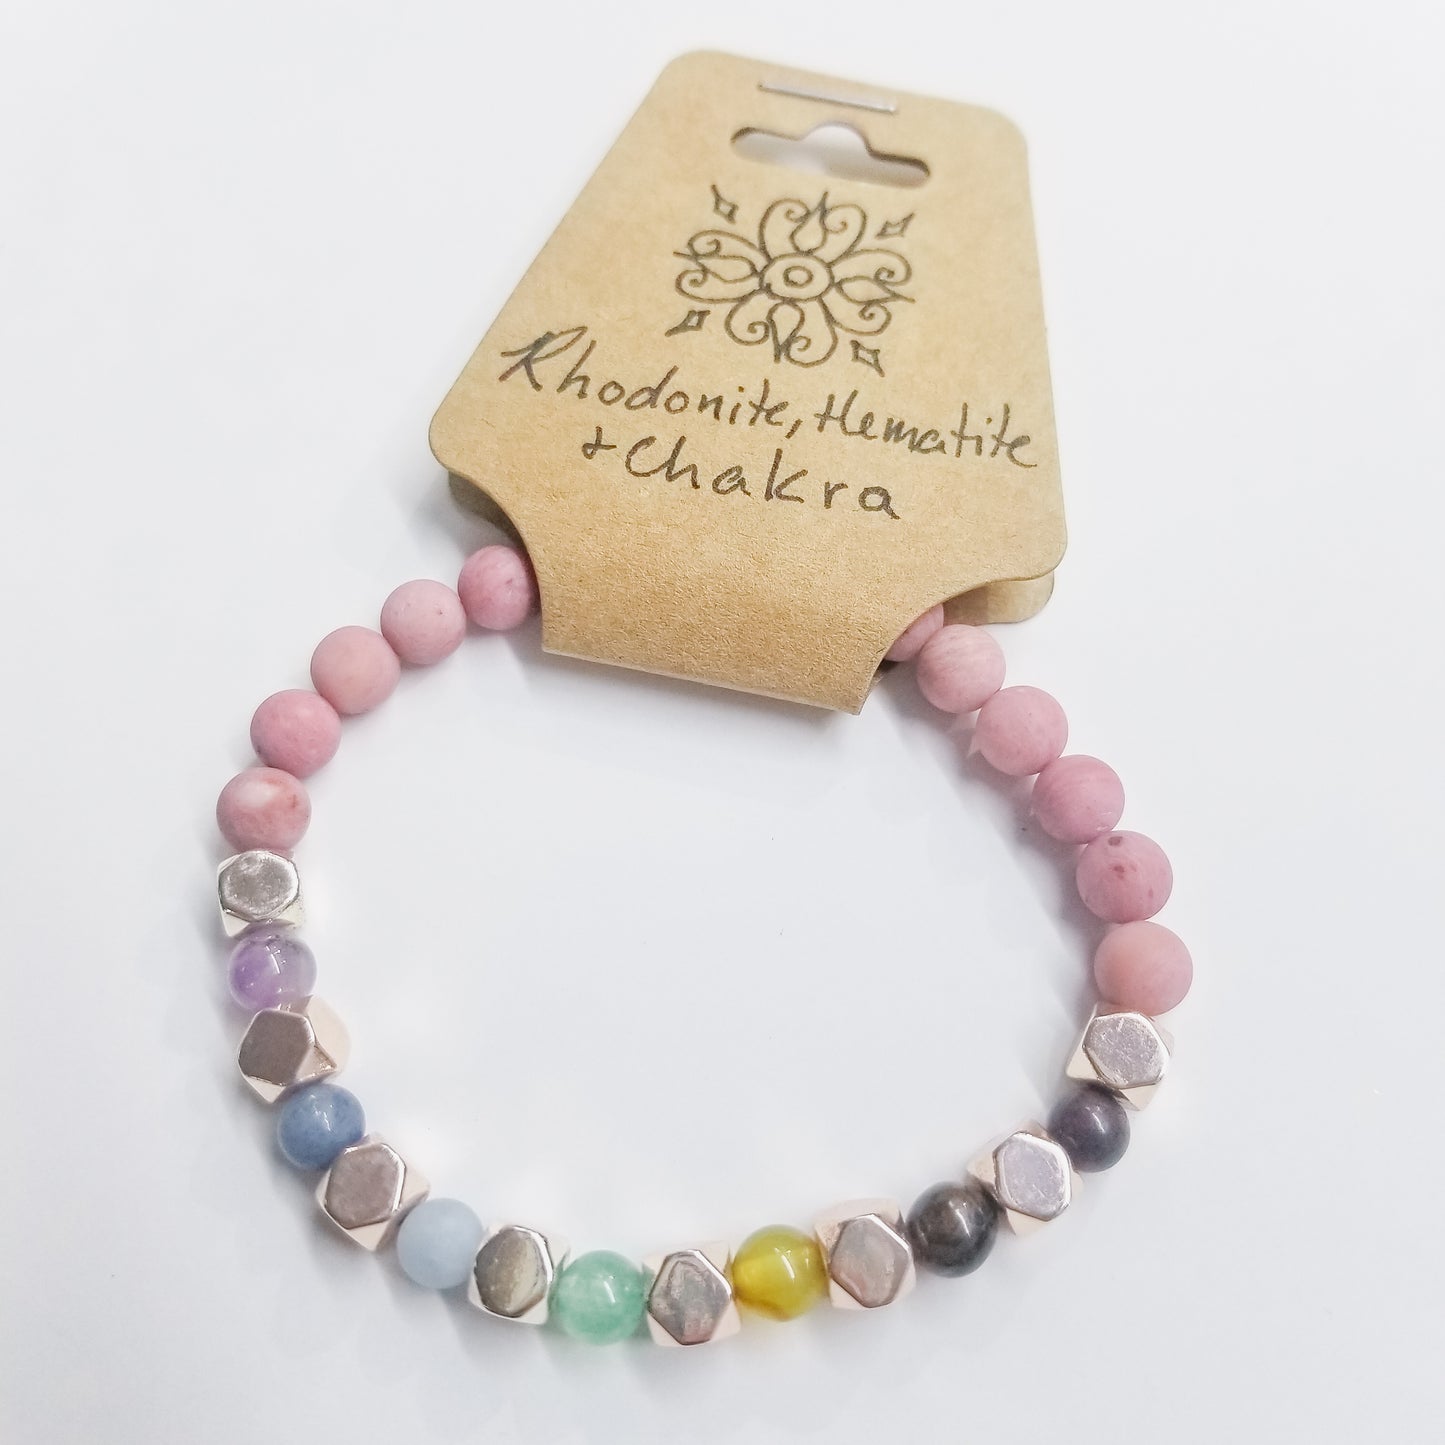 Rhodonite, Hematite & Chakra Crystal Bracelet